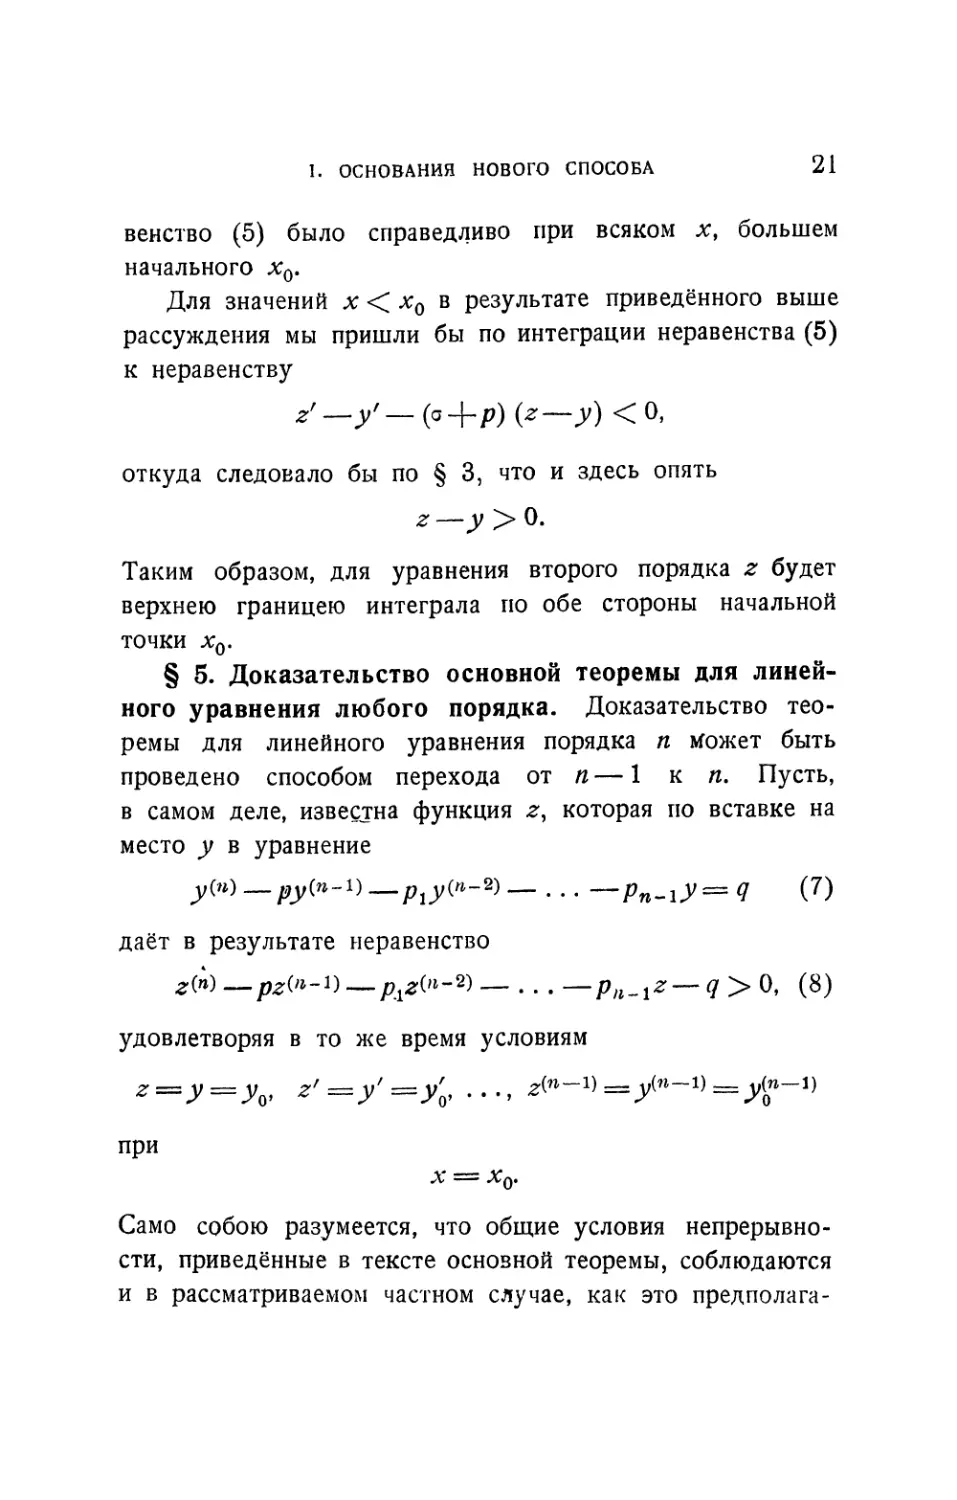 § 5. Доказательство основной теоремы для линейного уравнения любого порядка